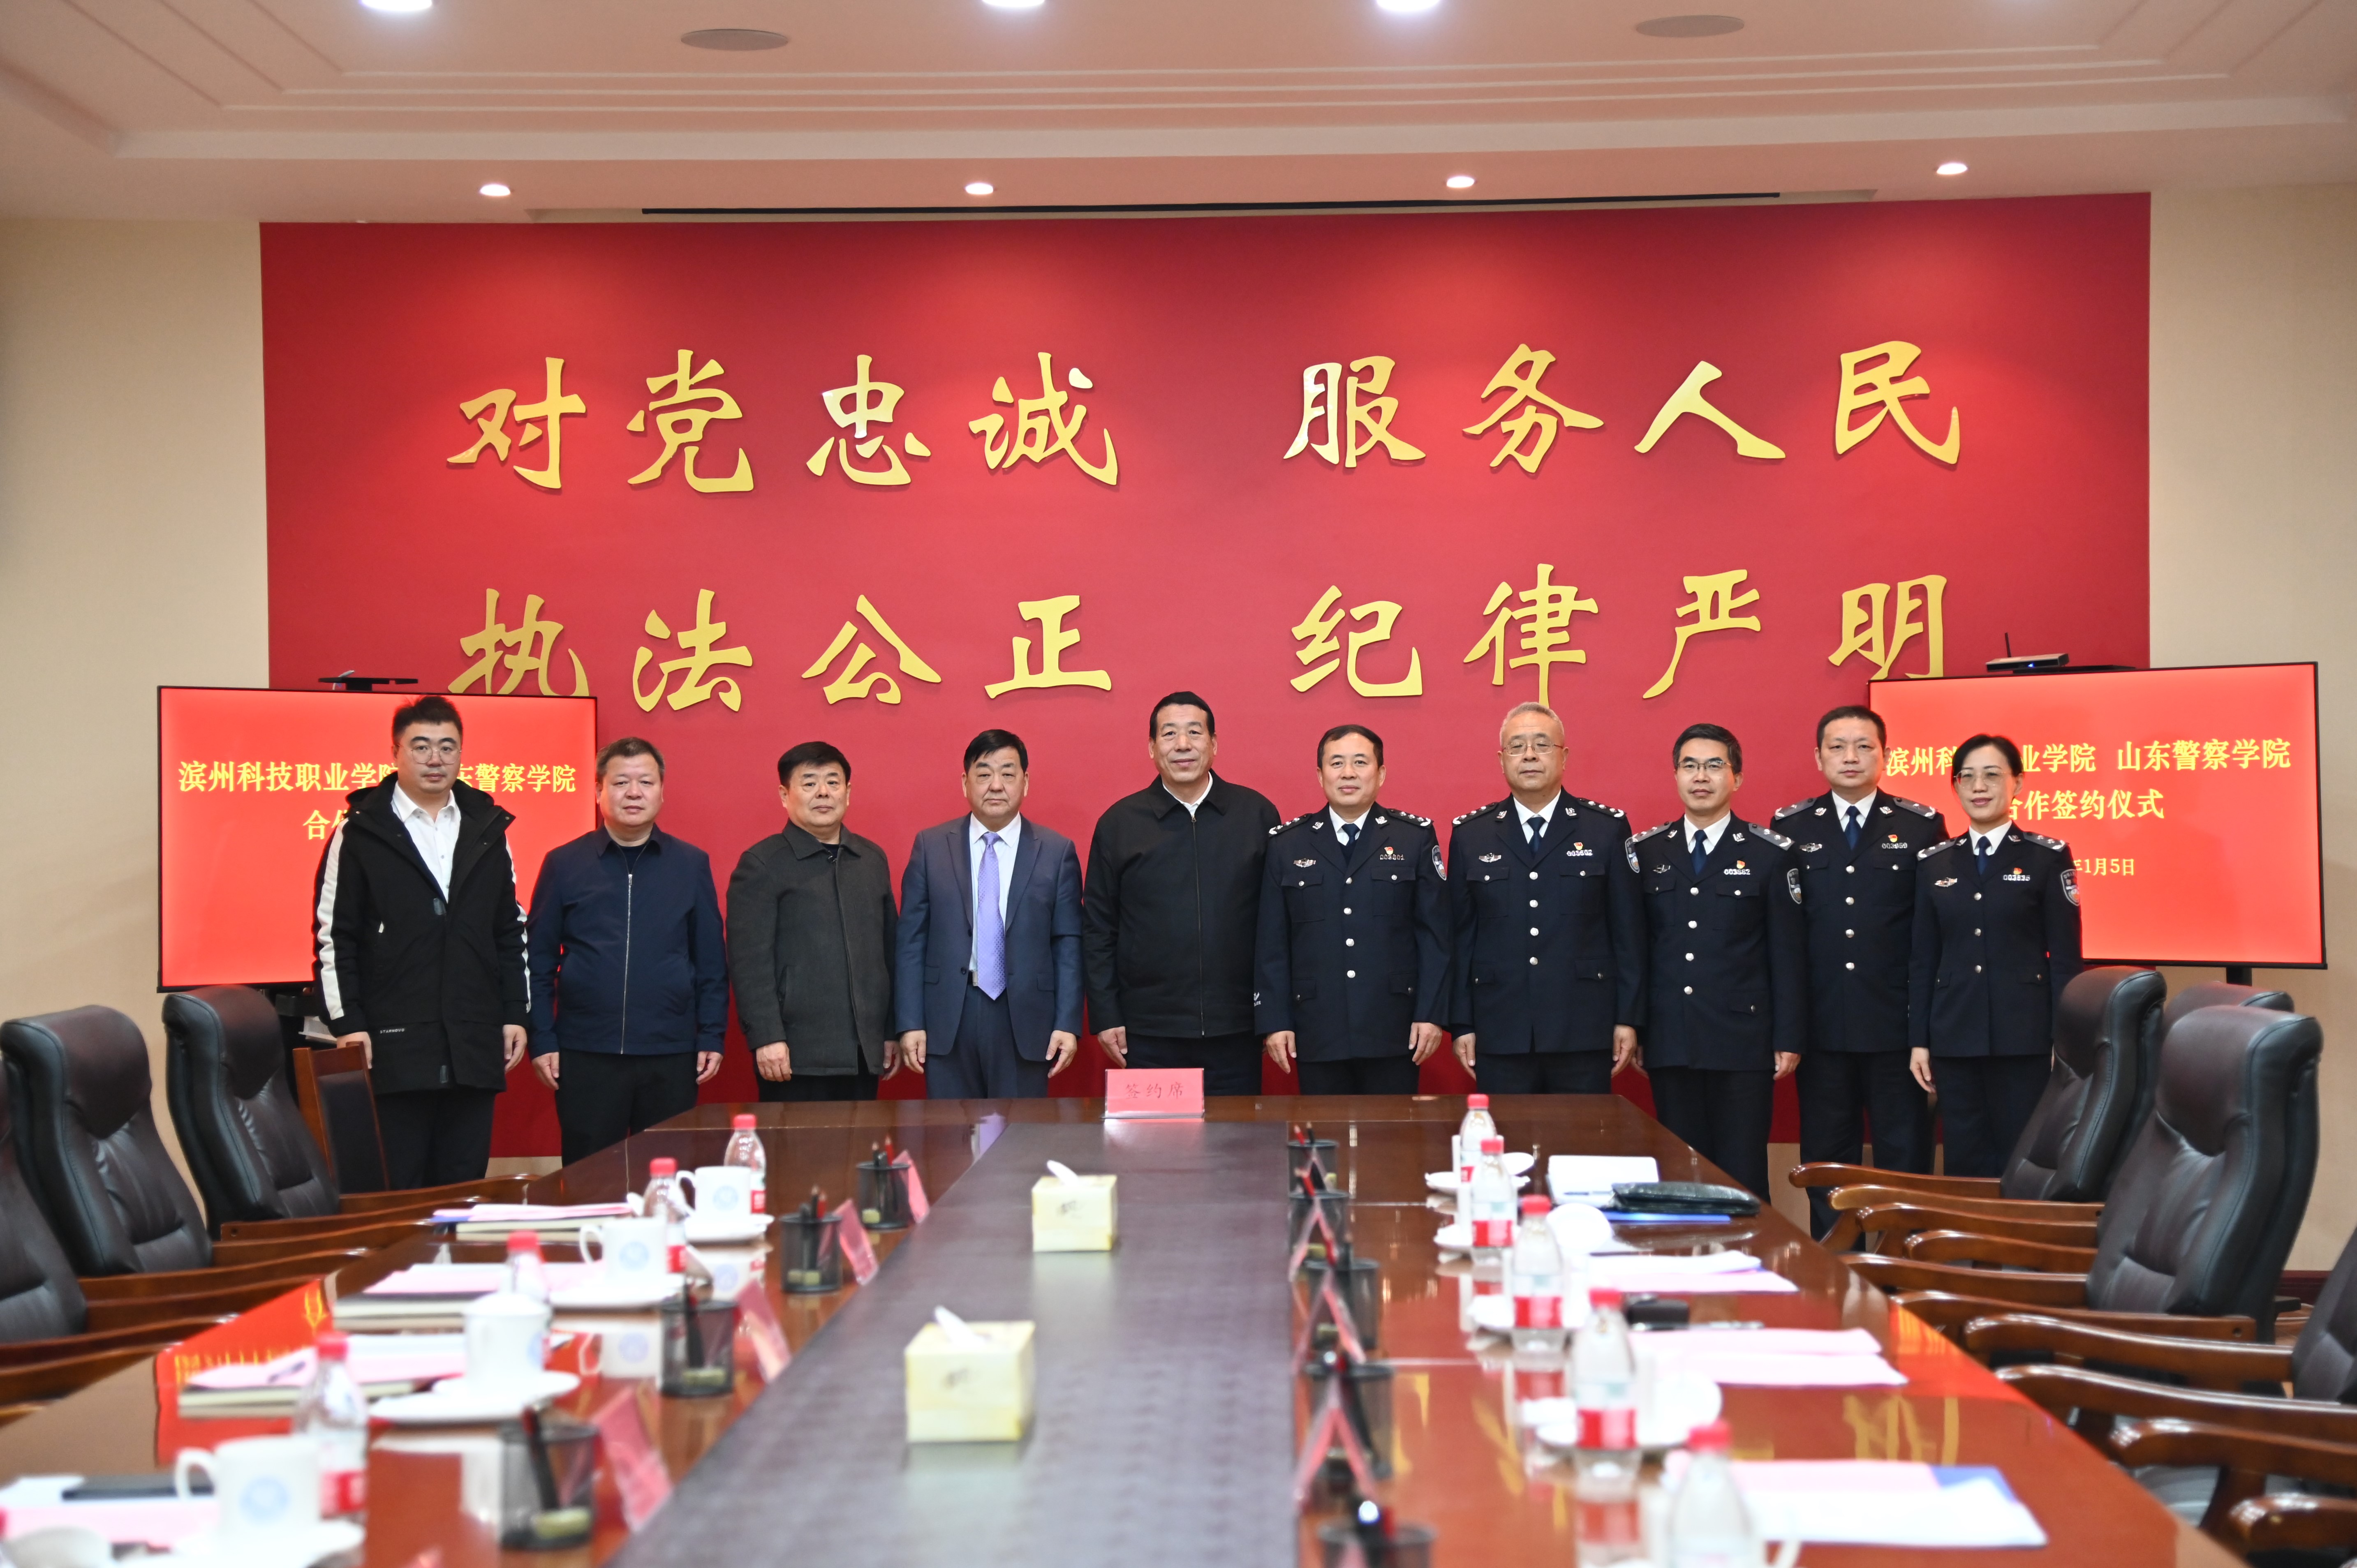 博马官网与滨州科技职业博马官网签署合作框架协议